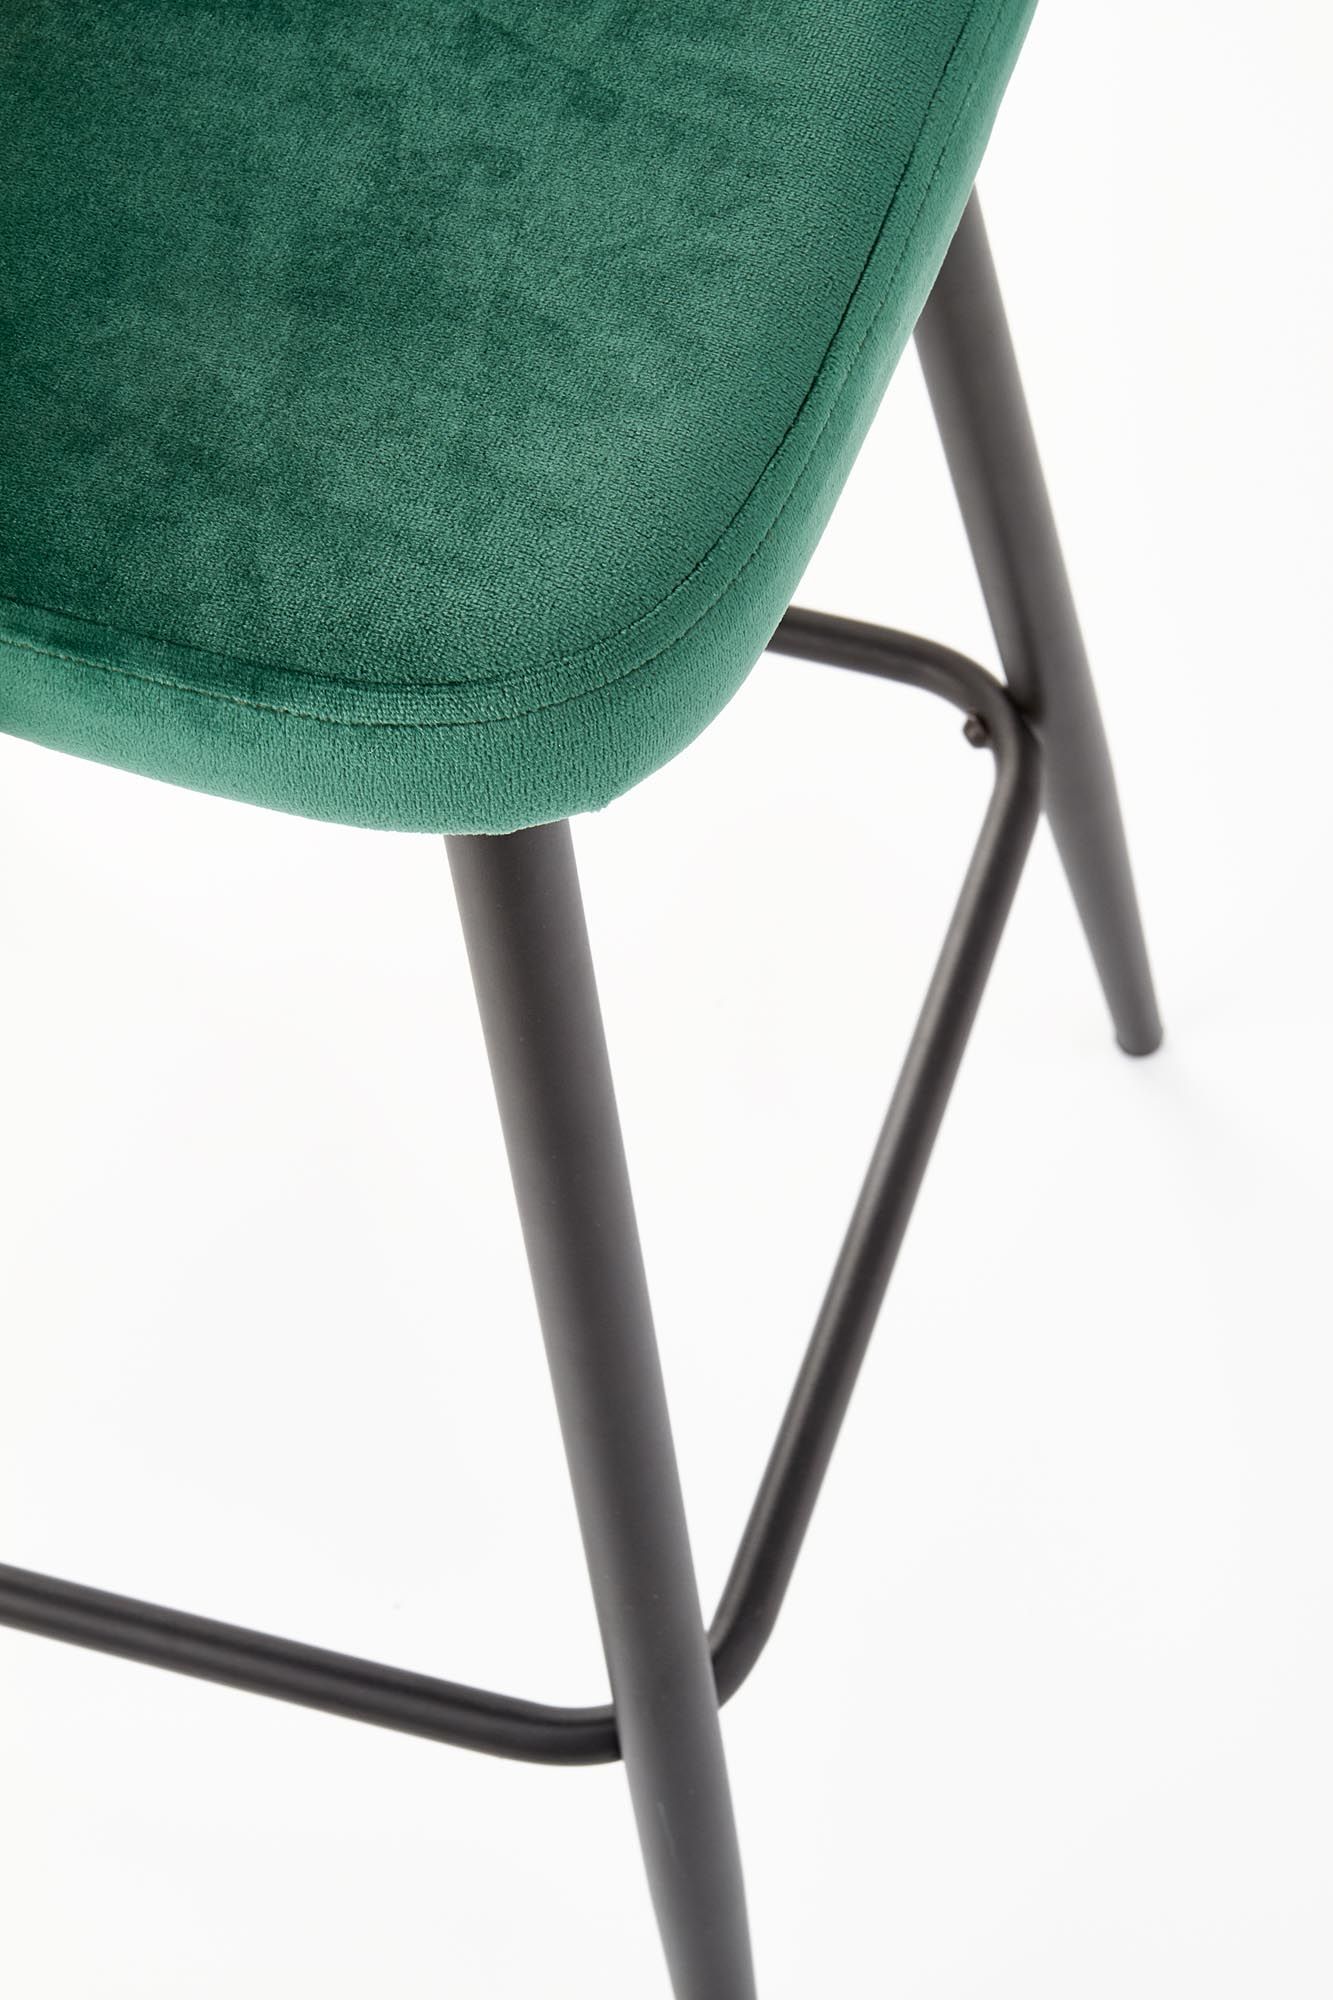 барный стул halmar h96, темно-зеленый